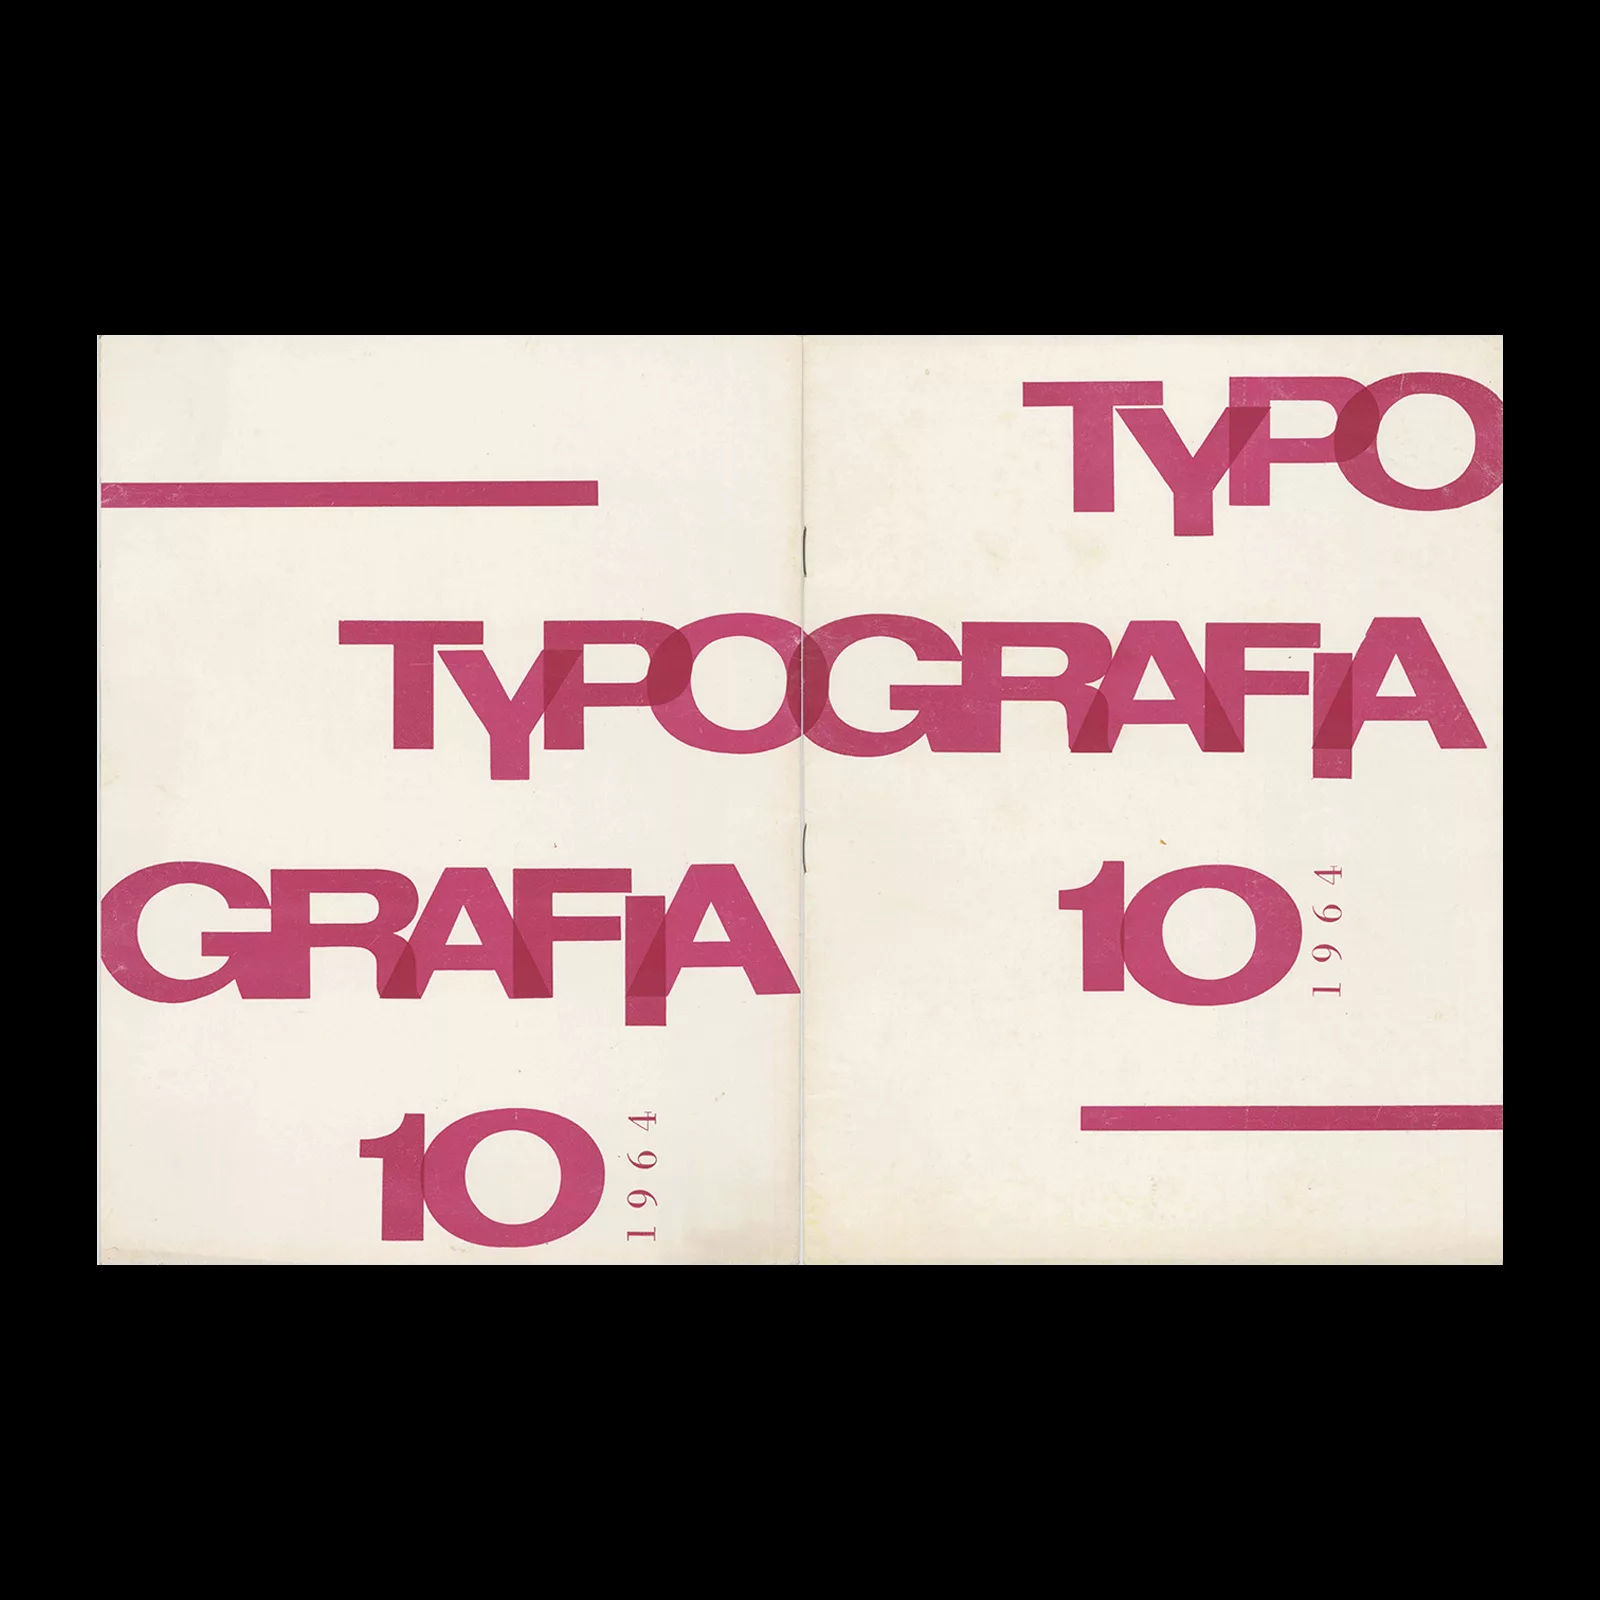 Typografia, ročník 67, 10, 1964. Cover design by Antonin Ernest